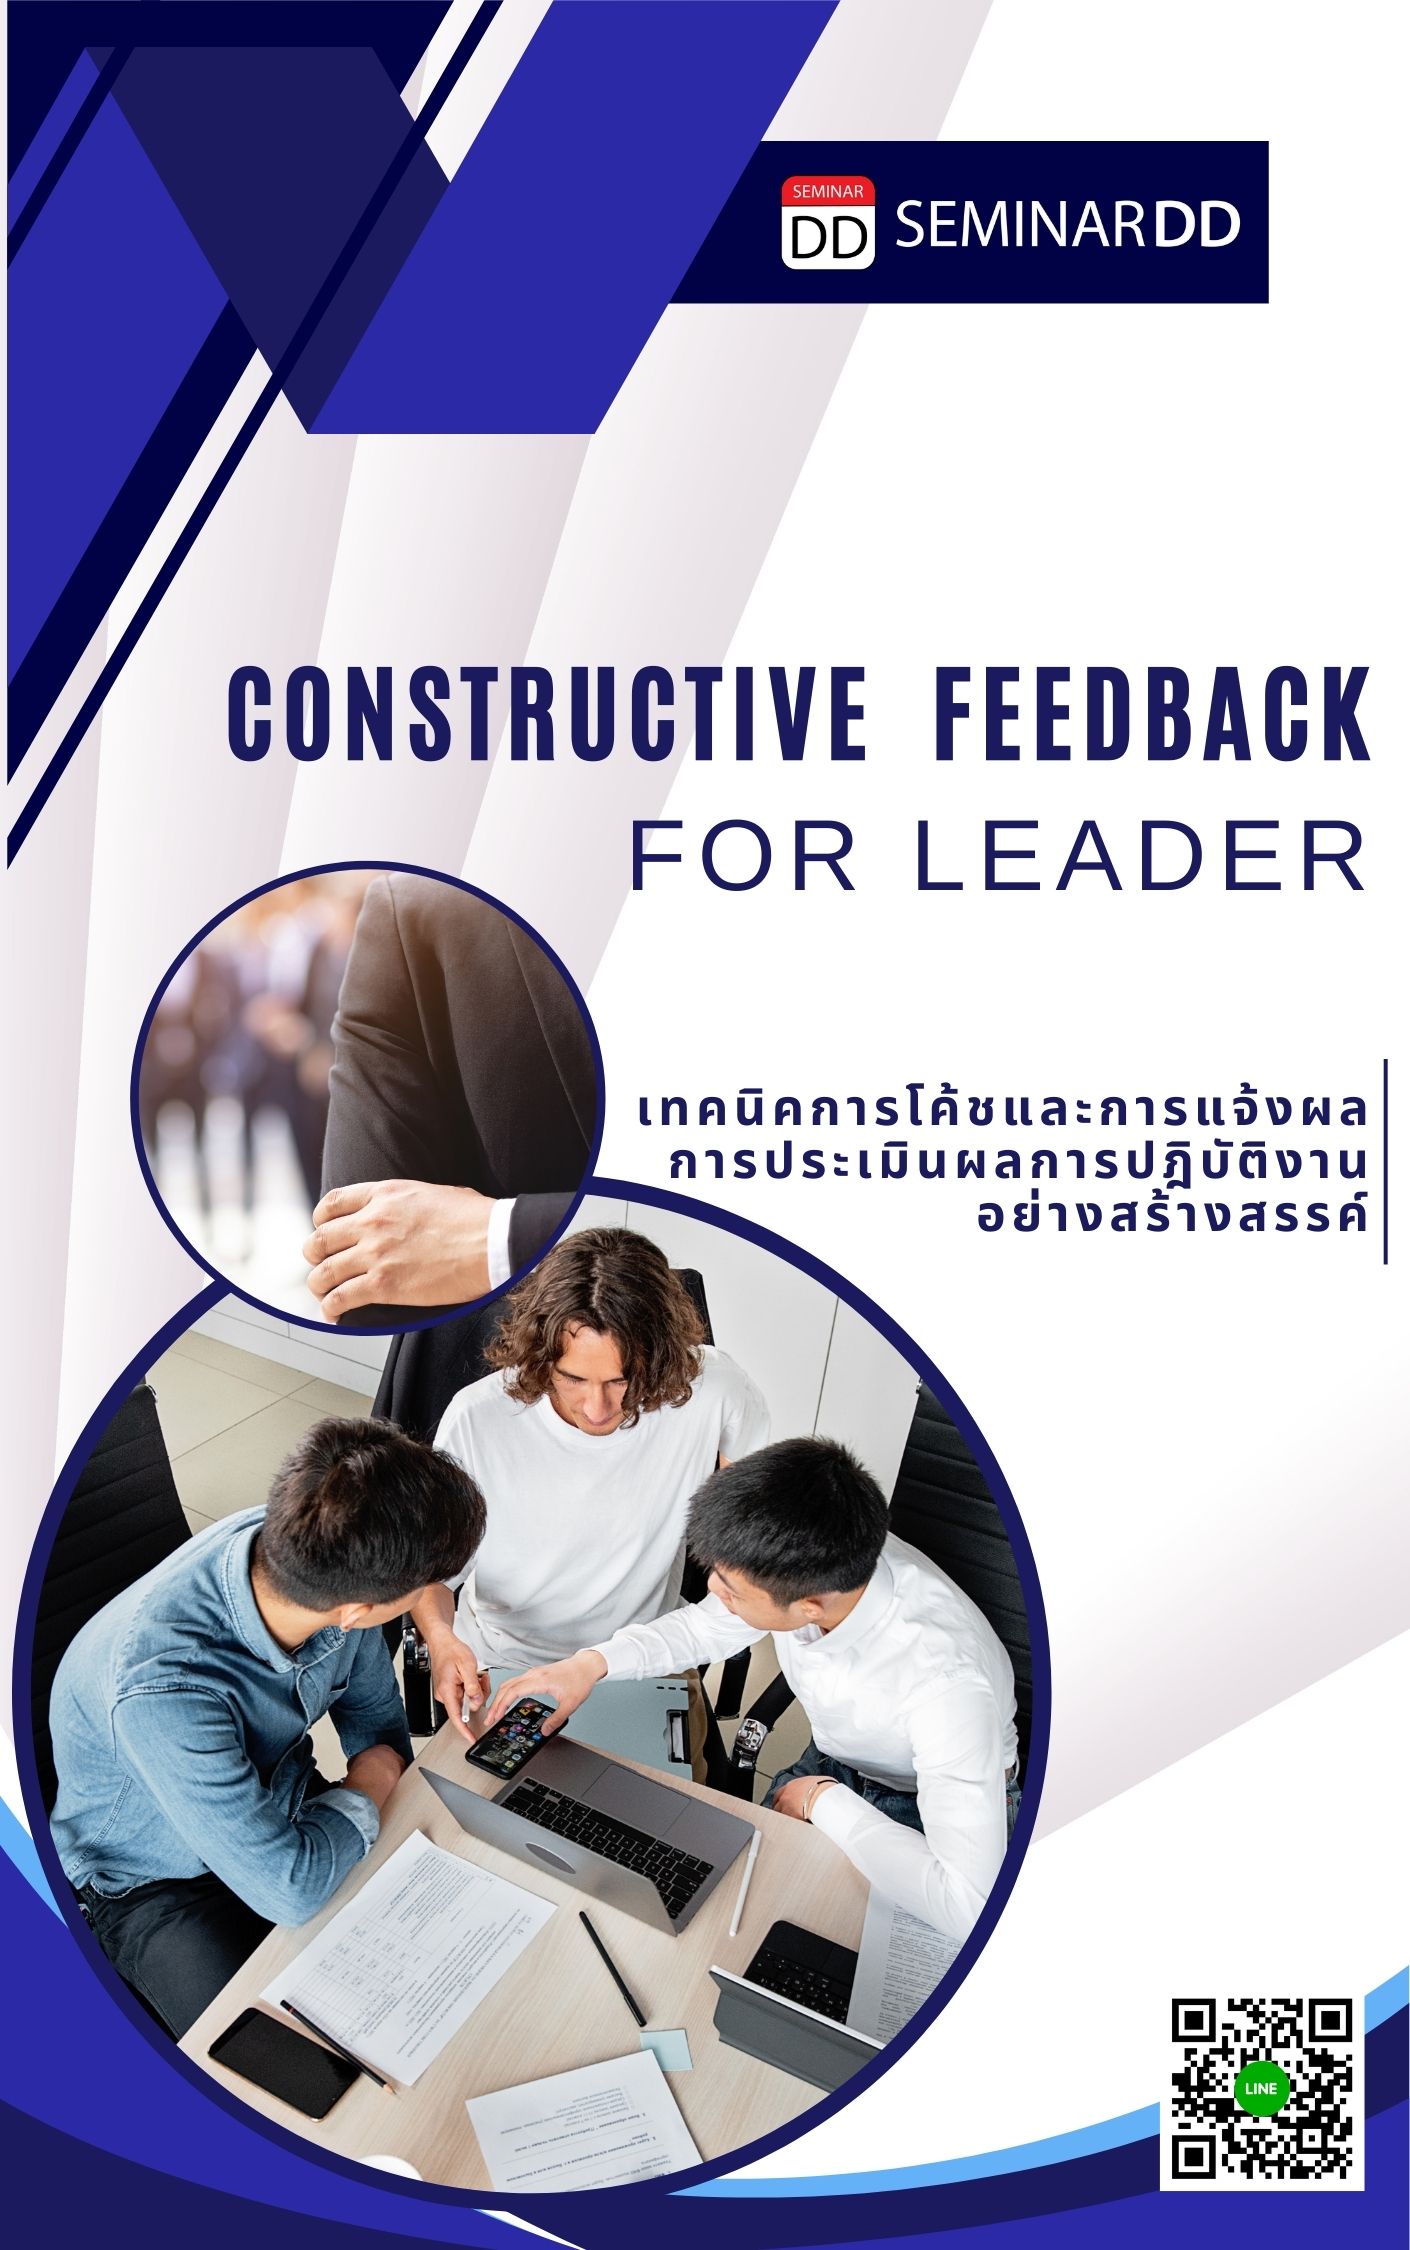 หลักสูตร เทคนิคการโค้ชและการแจ้งผลการประเมินการปฏิบัติงานอย่างสร้างสรรค์  ( Constructive  Feedback for Leader )